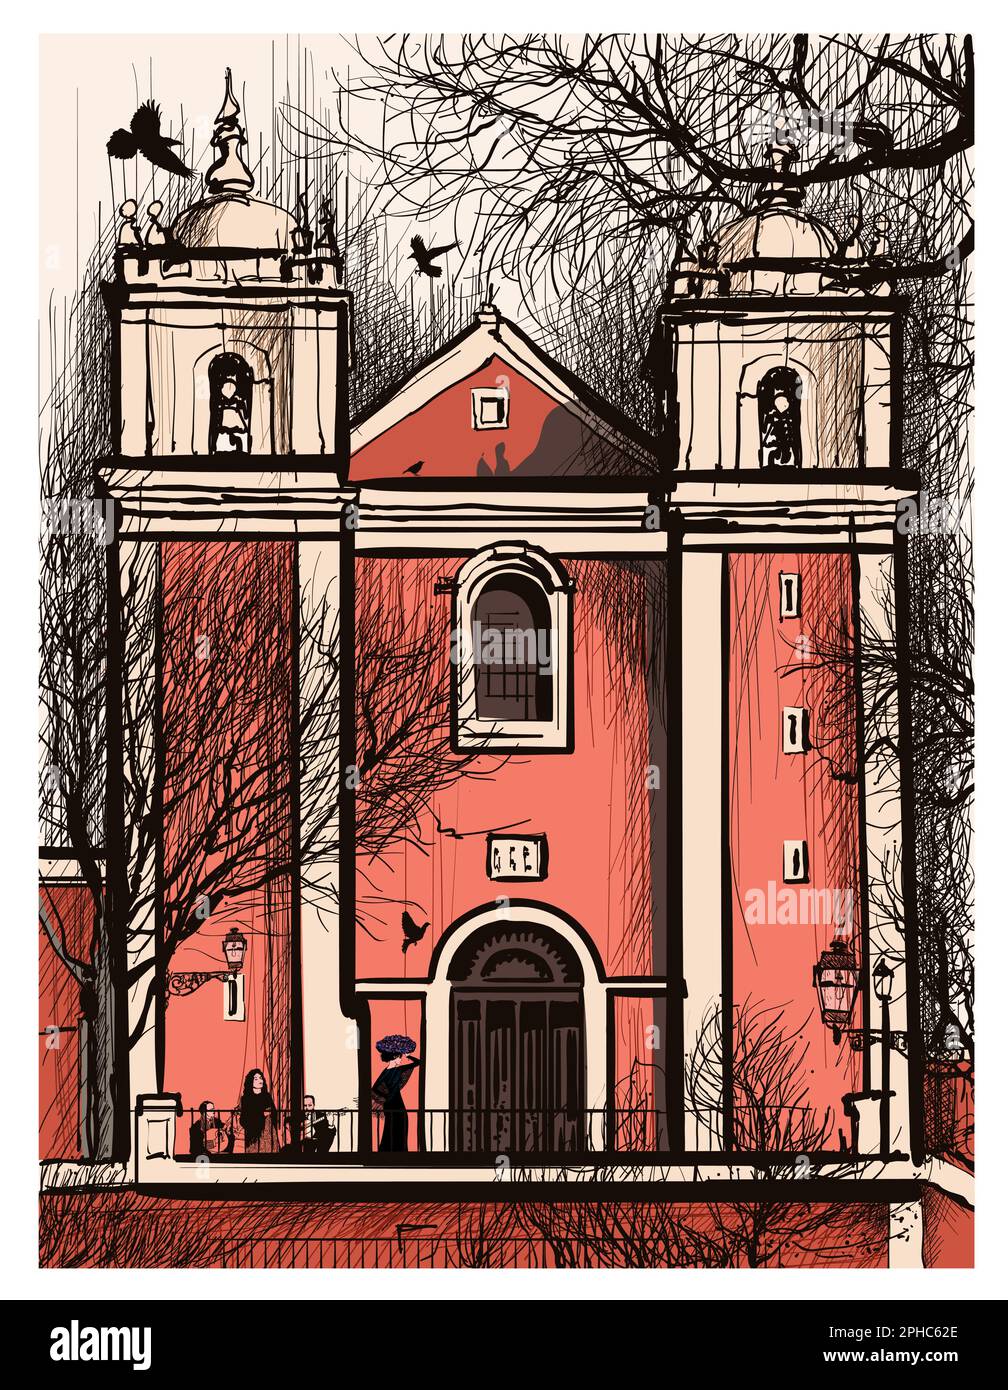 Representación original y colorida de la Iglesia Santos-O-Velho, en Lisboa, Portugal - ilustración vectorial (ideal para la impresión, cartel o papel tapiz, hou Ilustración del Vector